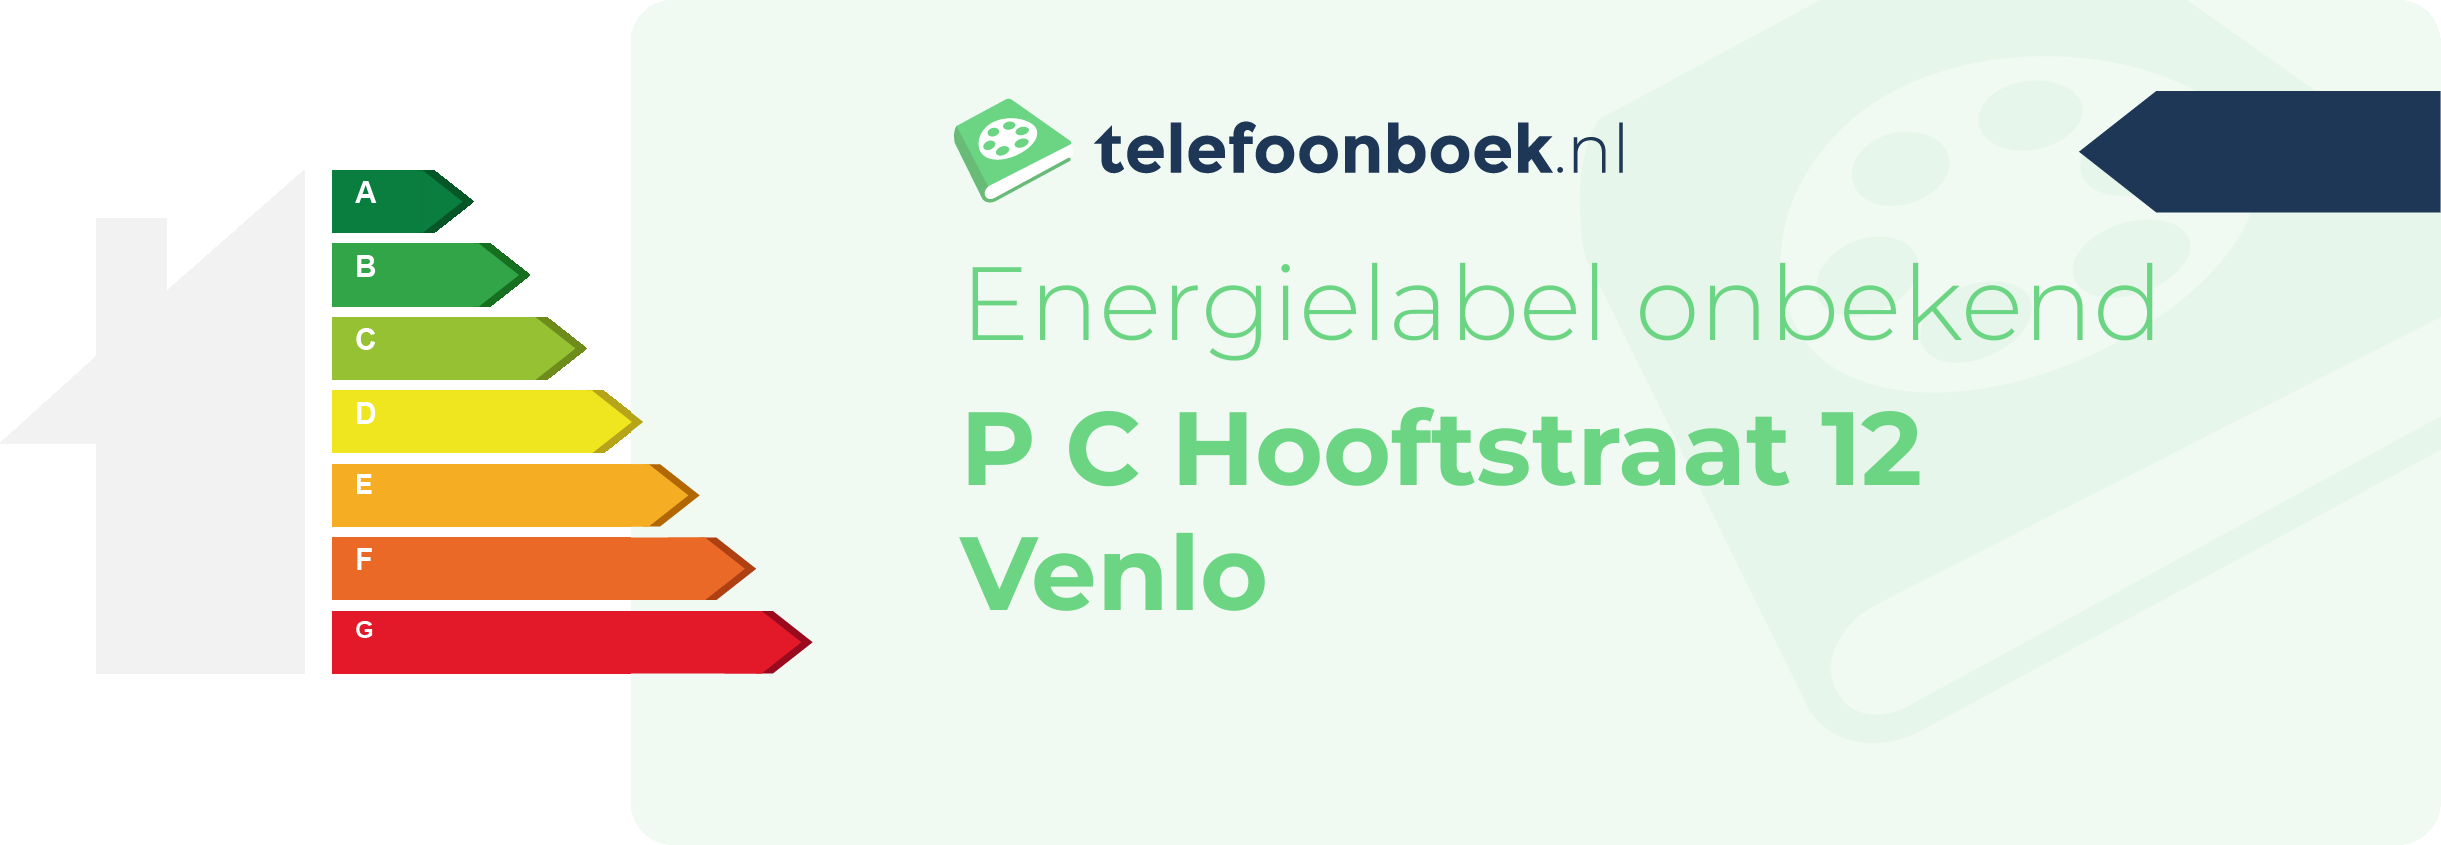 Energielabel P C Hooftstraat 12 Venlo